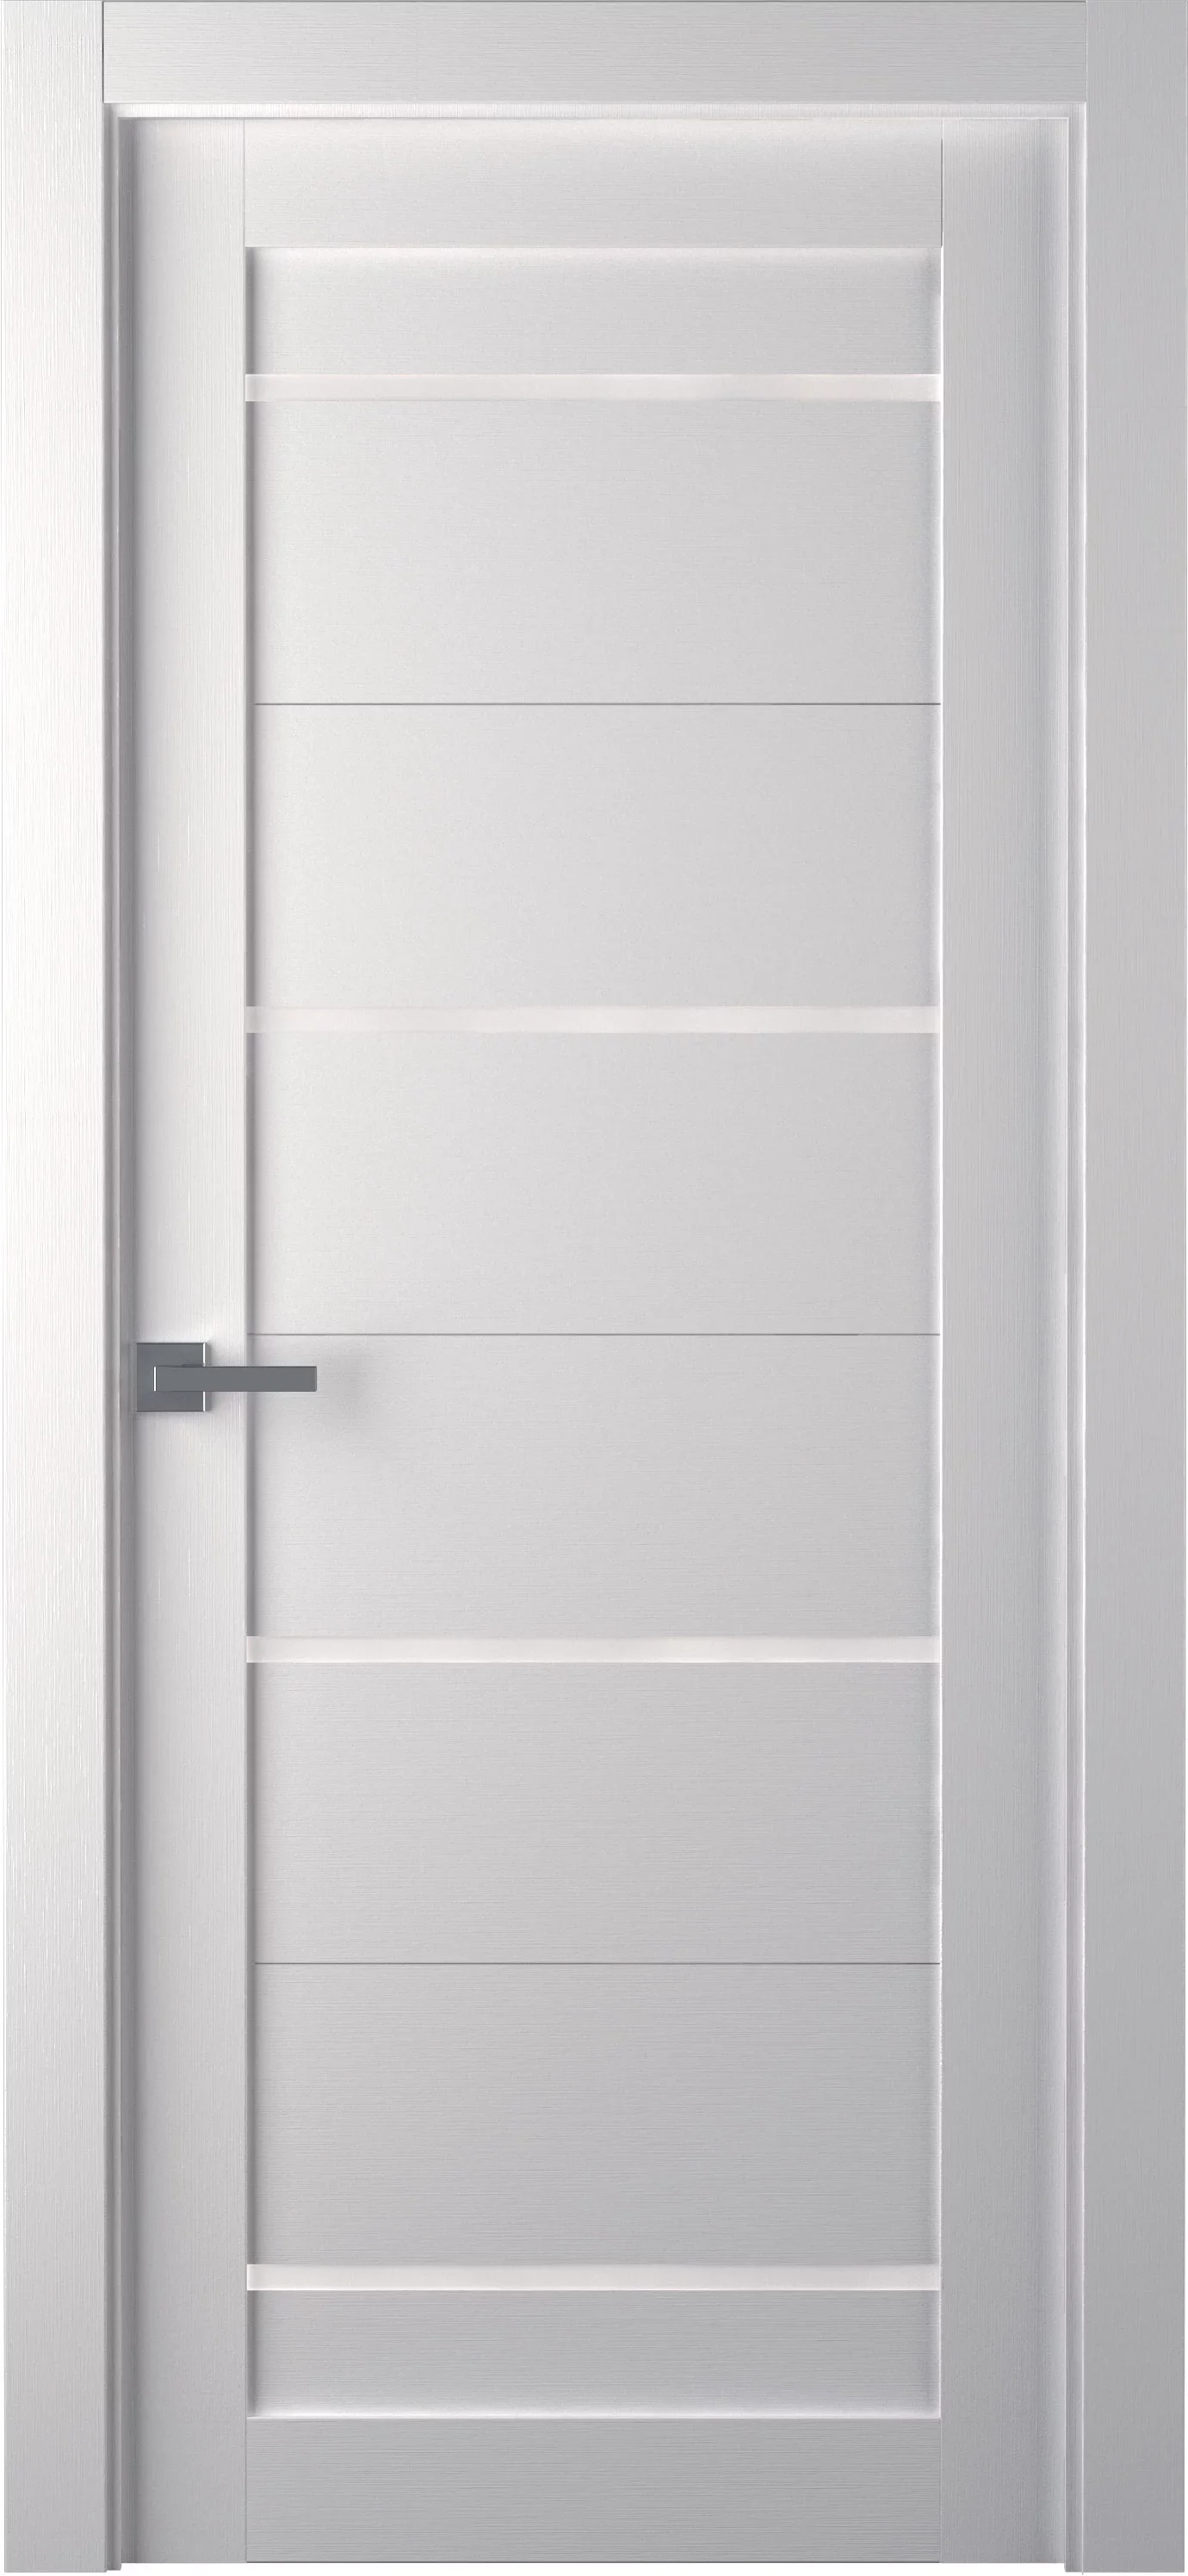 Durų varčia MIKA baltos tekstūrinės spalvos, su matiniu stiklu, 700 x 2000 mm, universali